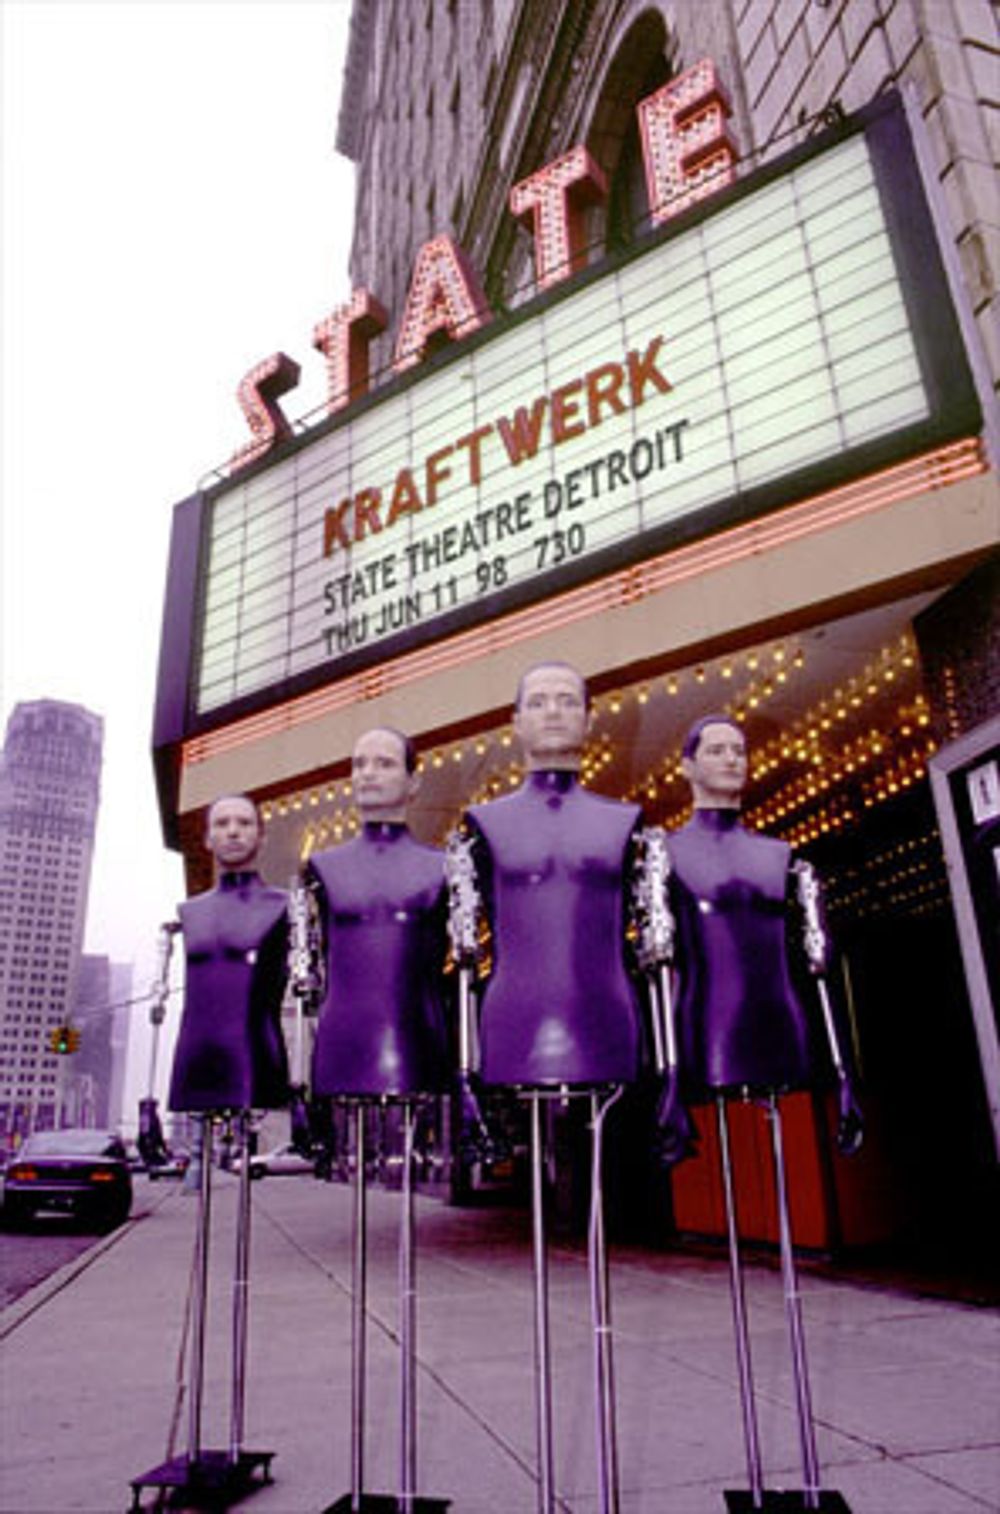 WE ARE THE ROBOTS: Kraftwerks roboter fotografert i dagslys, noe som er en sjeldenhet. Bildet er fra Detroit i USA der de også har holdt konsert.